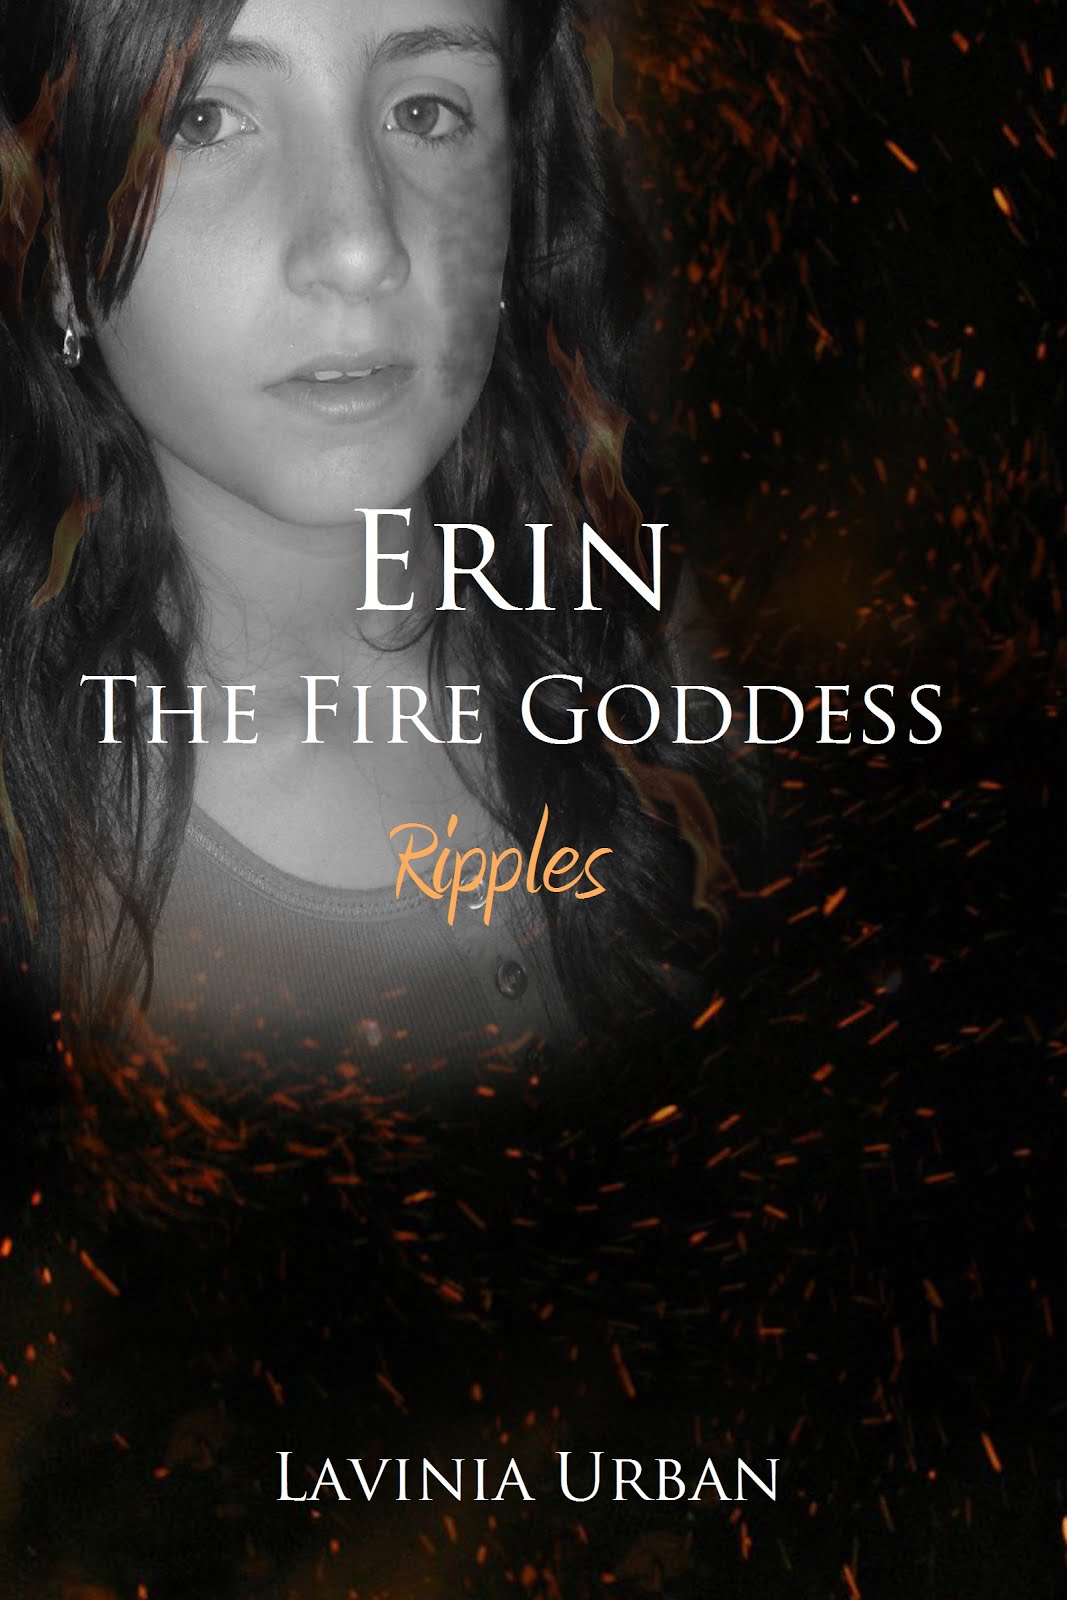 Erin the Fire Goddess: Ripples